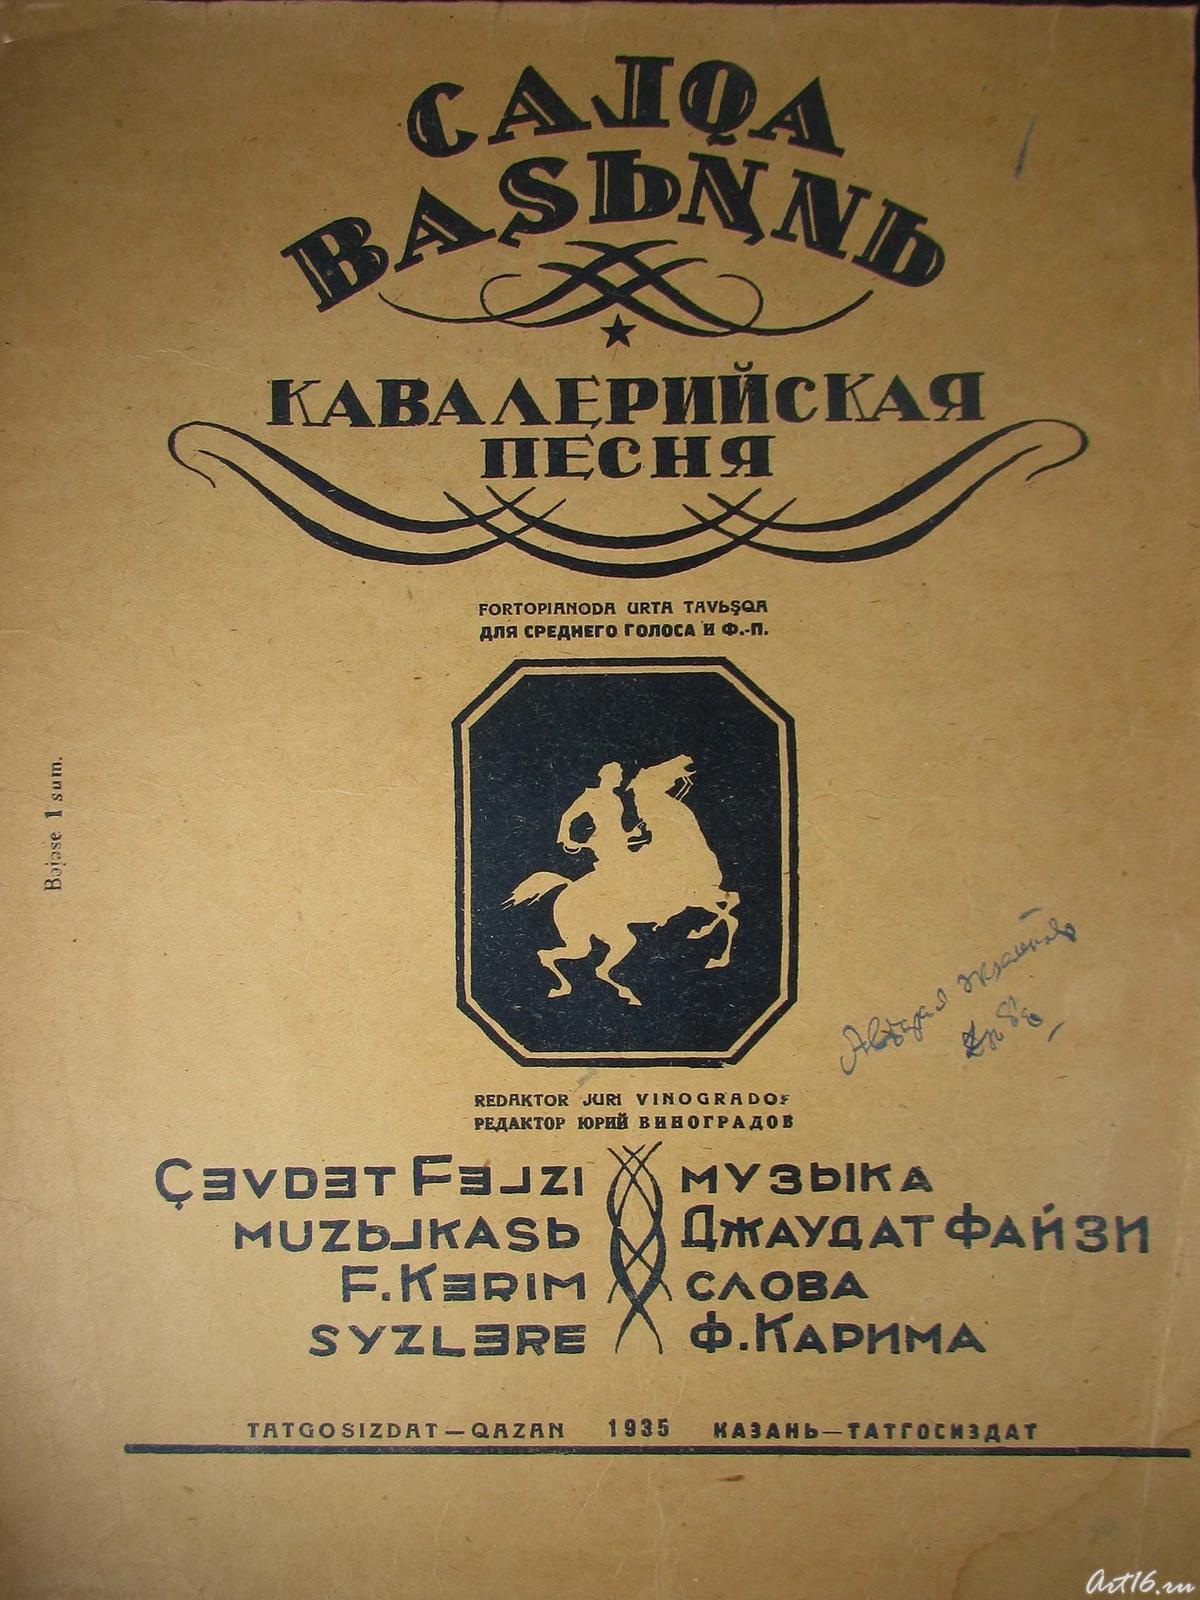 Фото №41764. Кавалерийская песня. Татгосиздат. Казань.1935